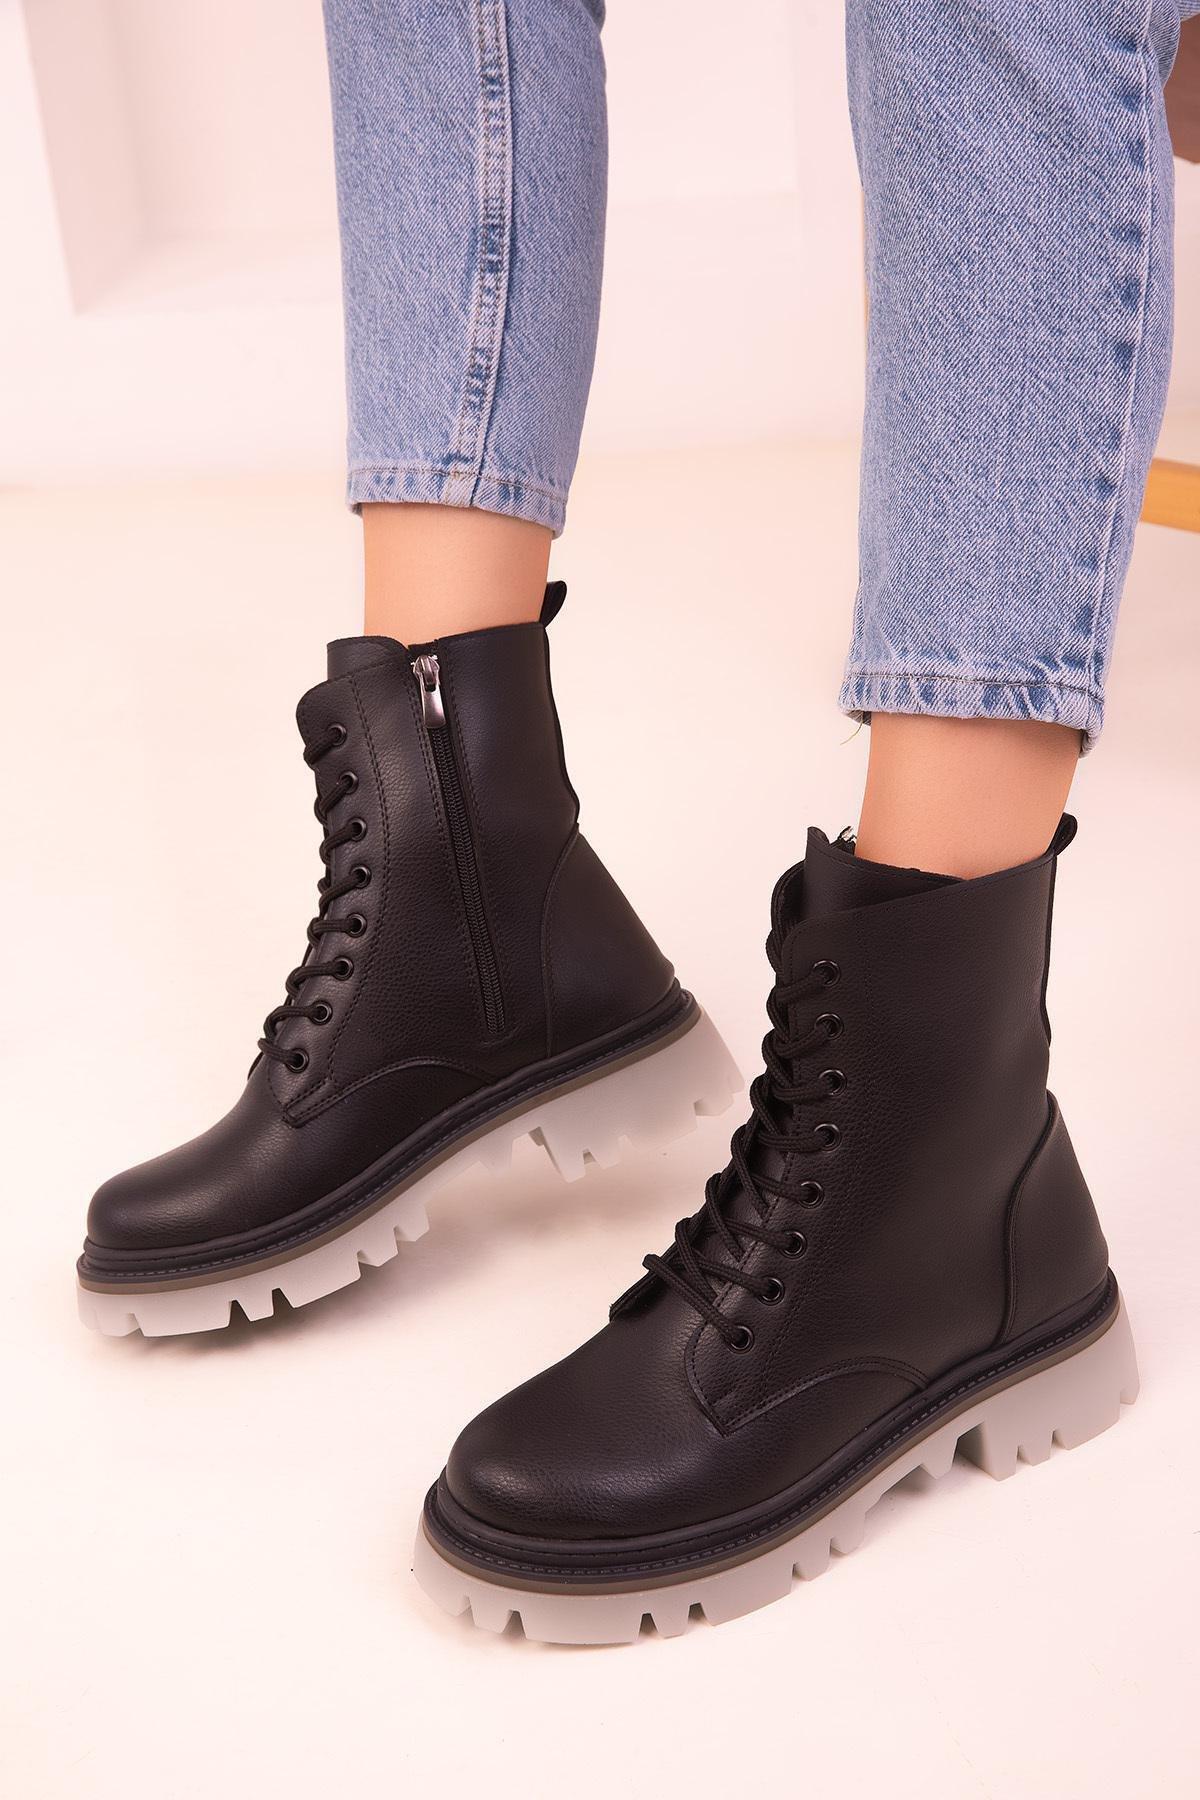 SOHO - Black Heeled Boots